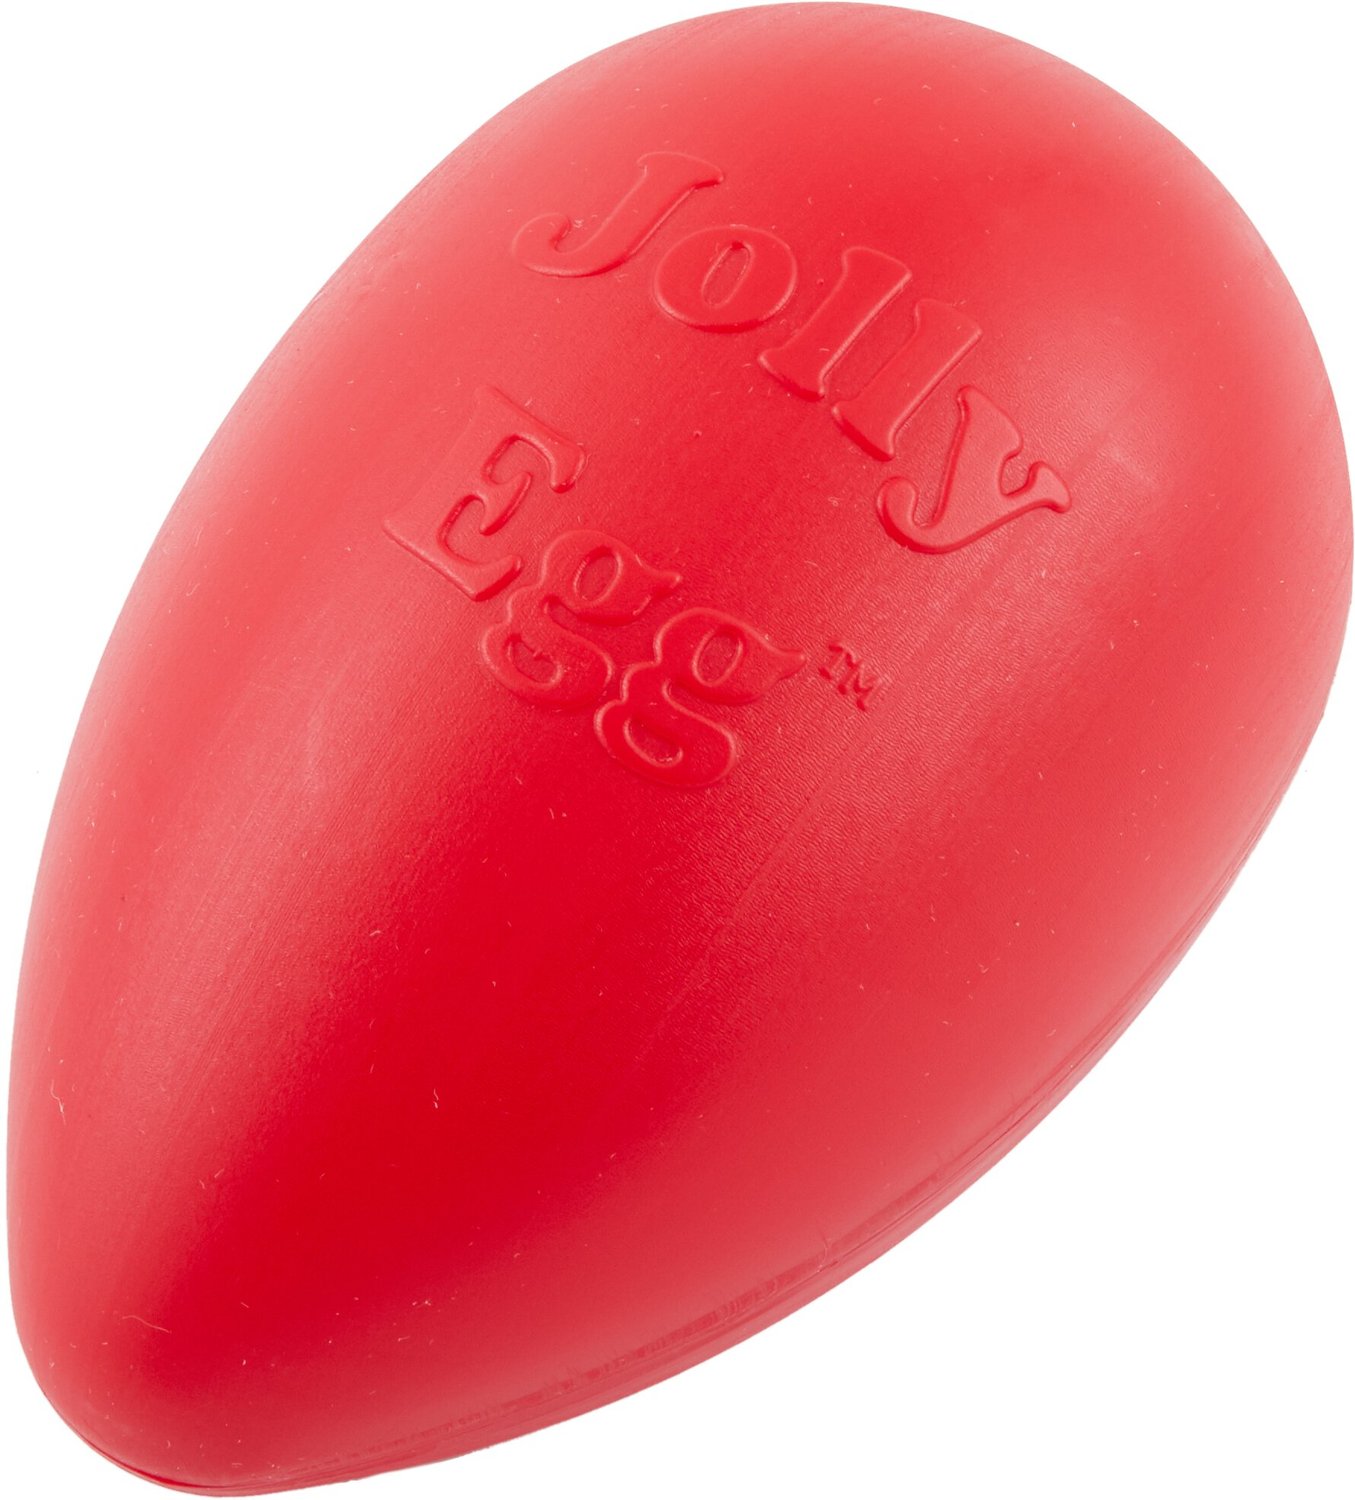 jolly egg dog toy